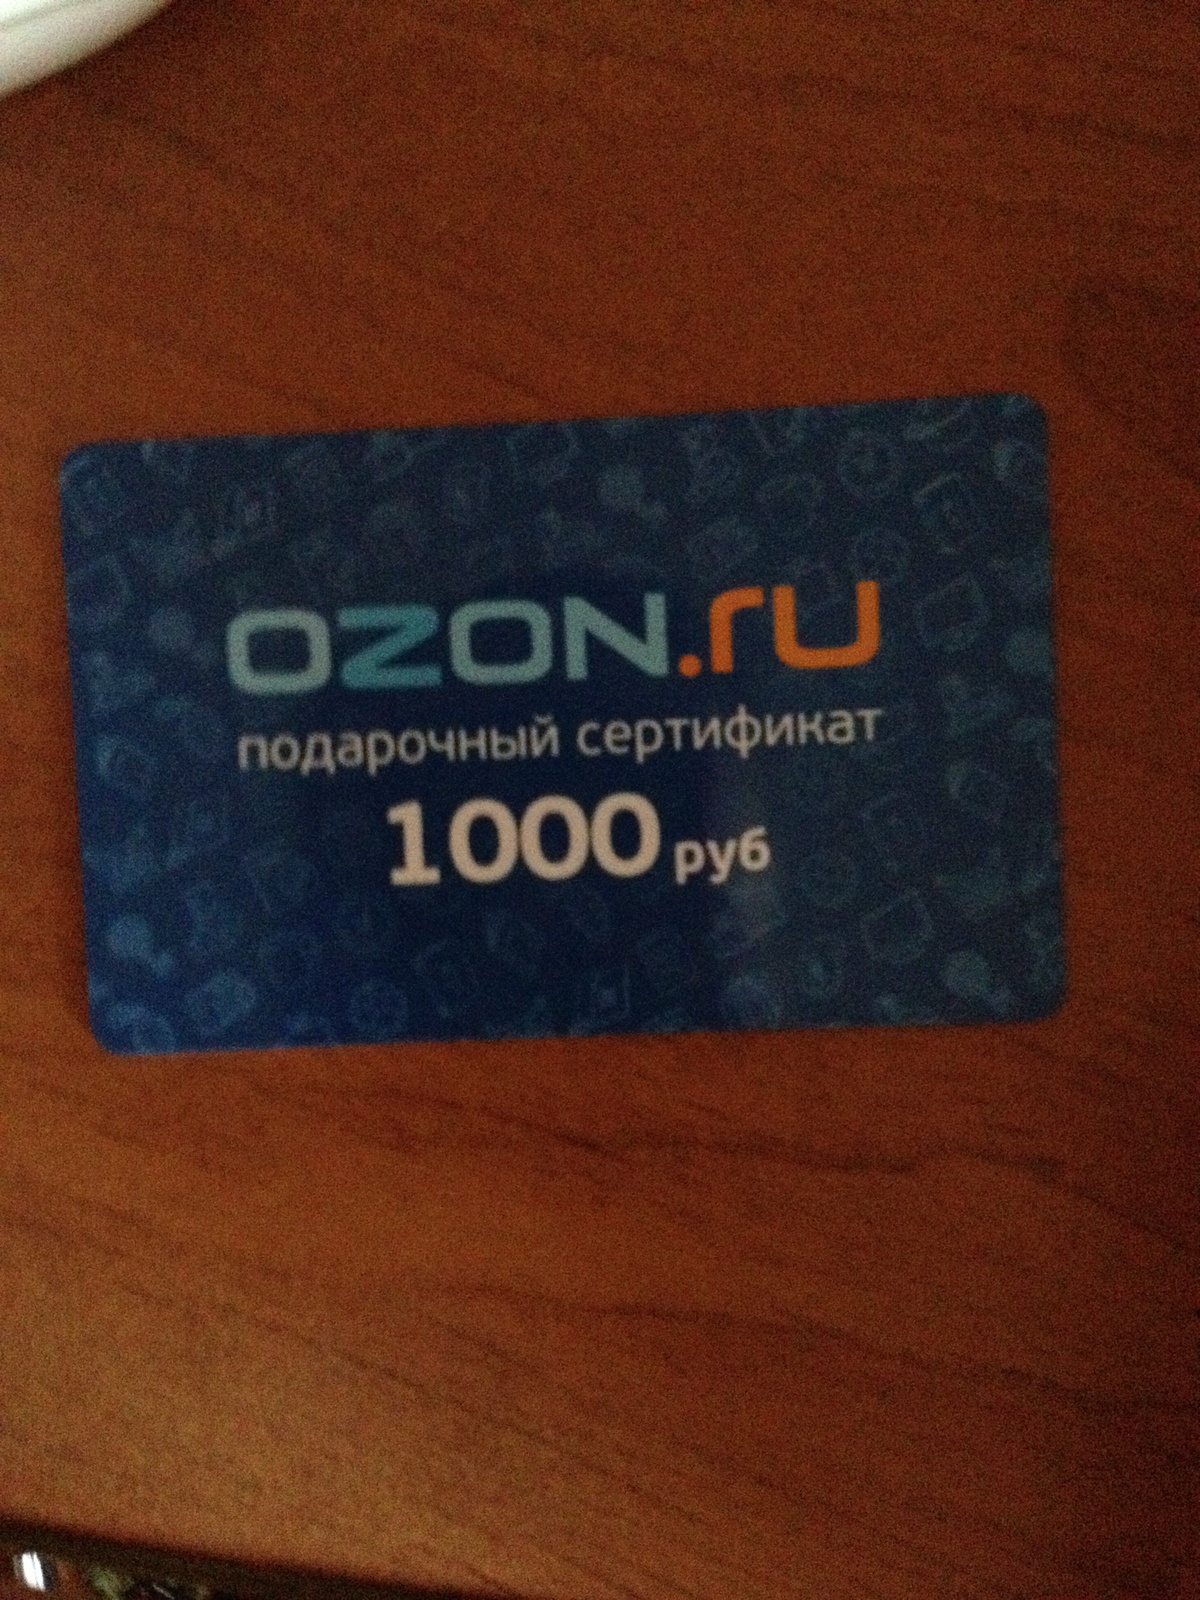 Как использовать сертификат озон при покупке. Сертификат OZON. Подарочный сертификат Озон. Сертификат OZON 1000. Подарочная карта Озон.